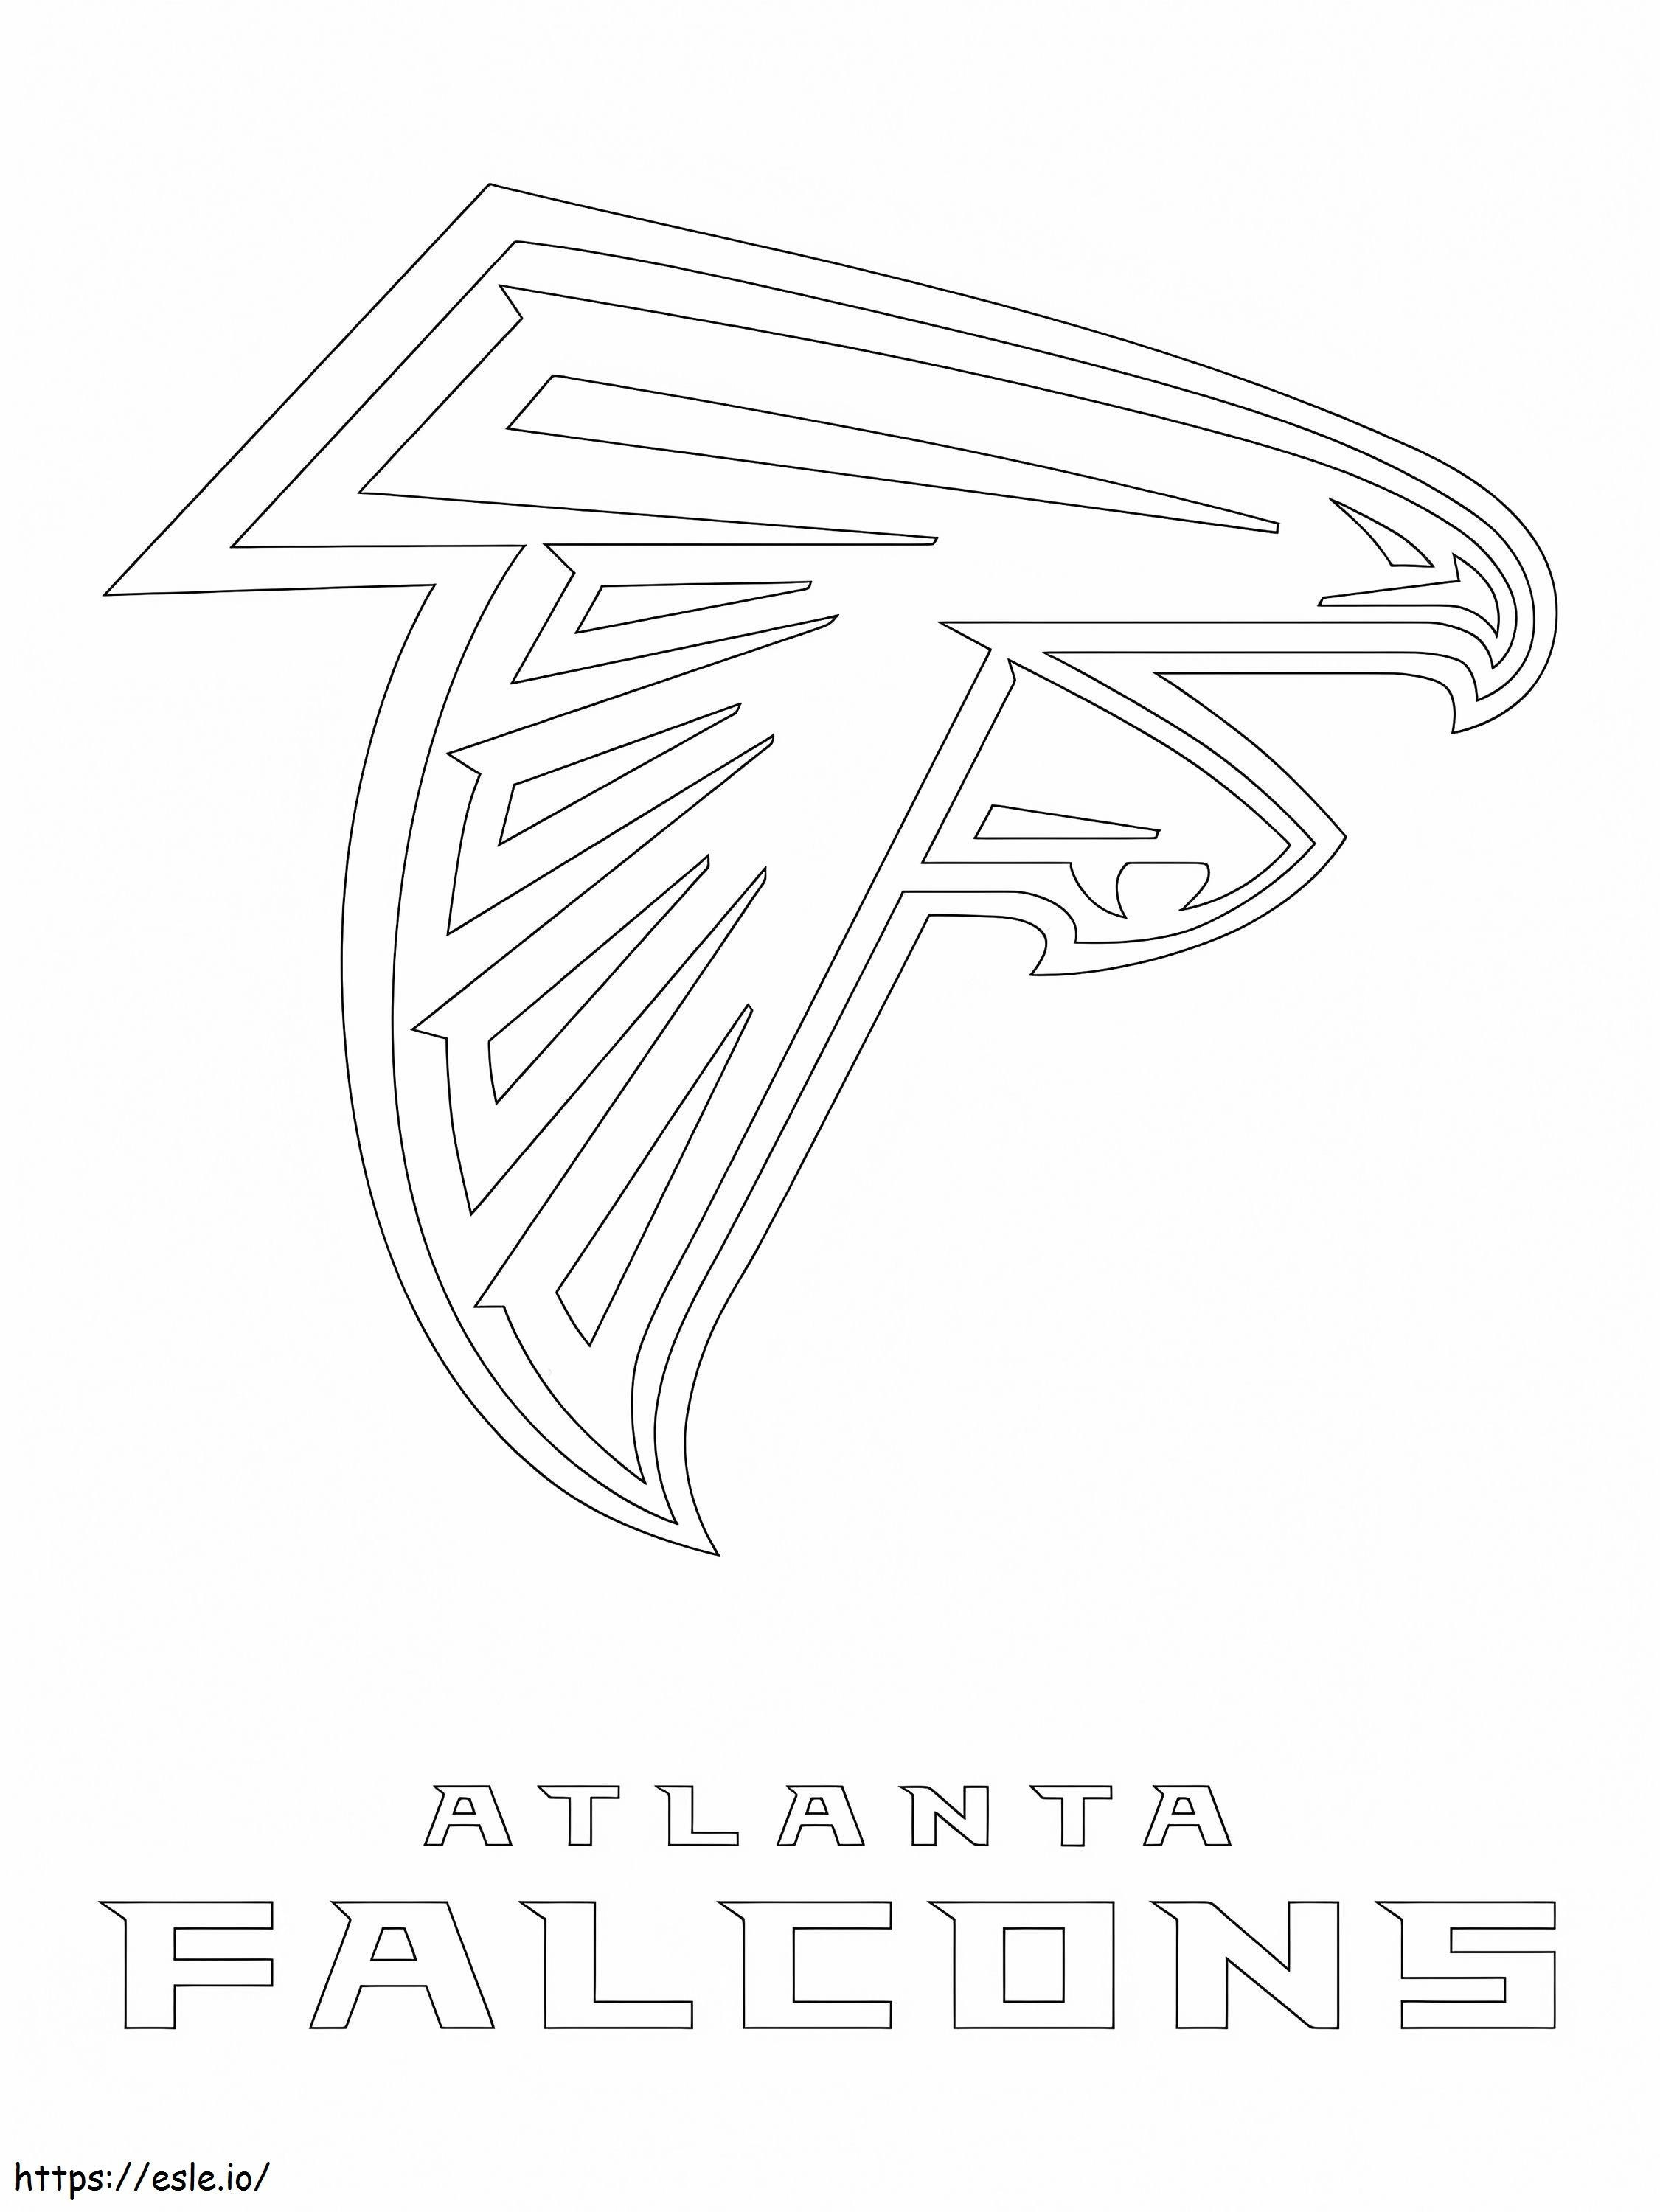 Logo Atlanty Falcons kolorowanka